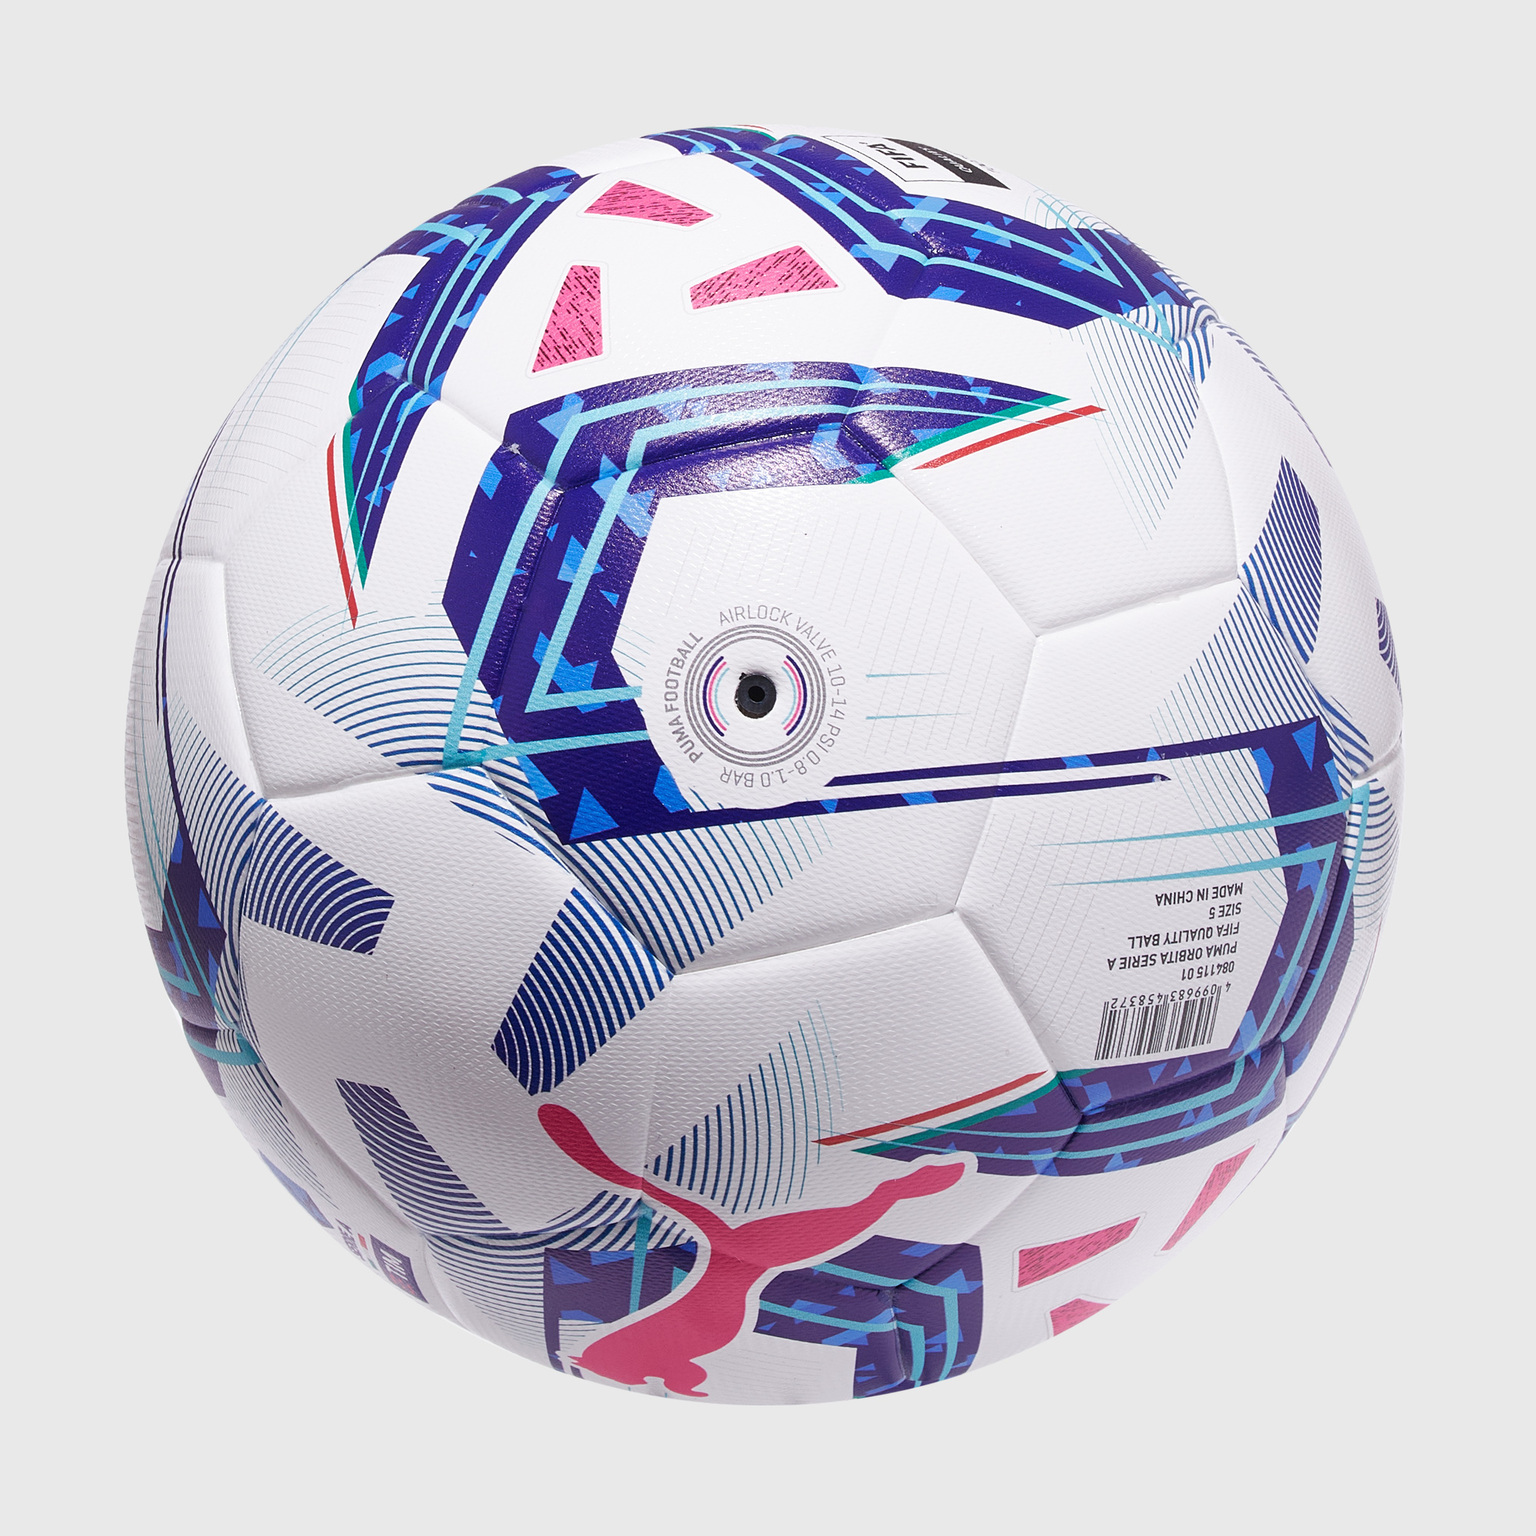 Футбольный мяч Puma Orbita Serie A 08411501